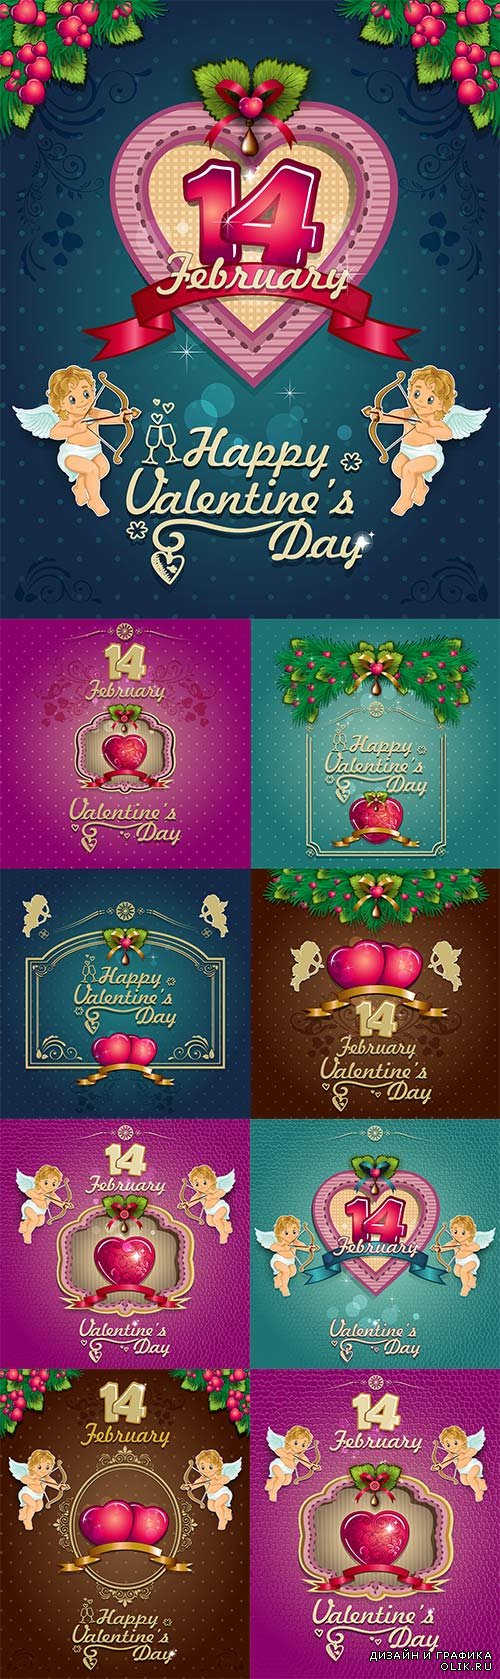 Greeting Cards Valentine's Day with angels - Поздравительные открытки ко дню Святого Валентина с ангелочками